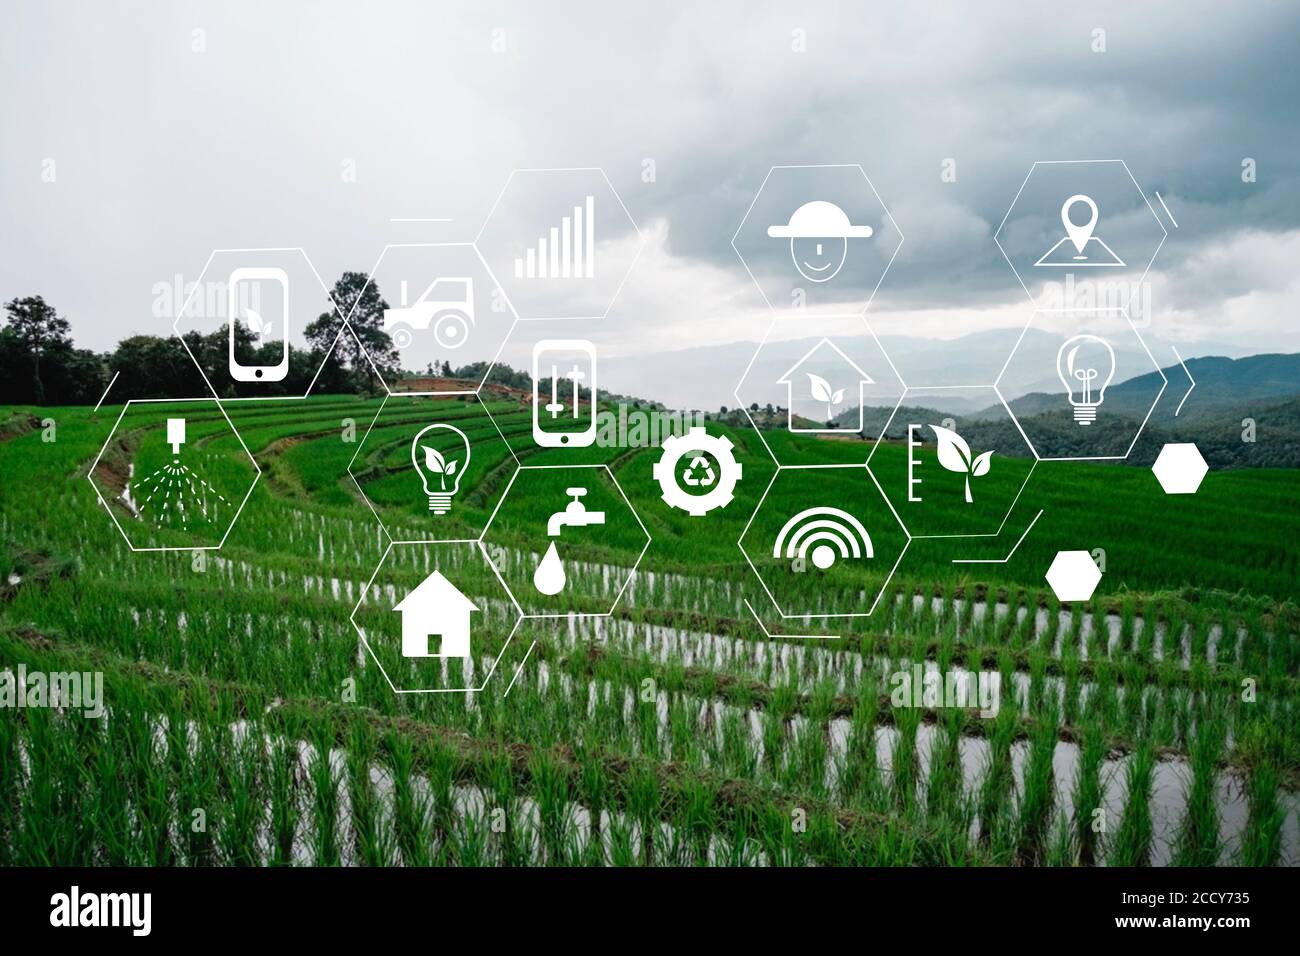 concept de technologie agricole homme Agronomist utilisant une tablette Internet de rapport sur les choses Banque D'Images